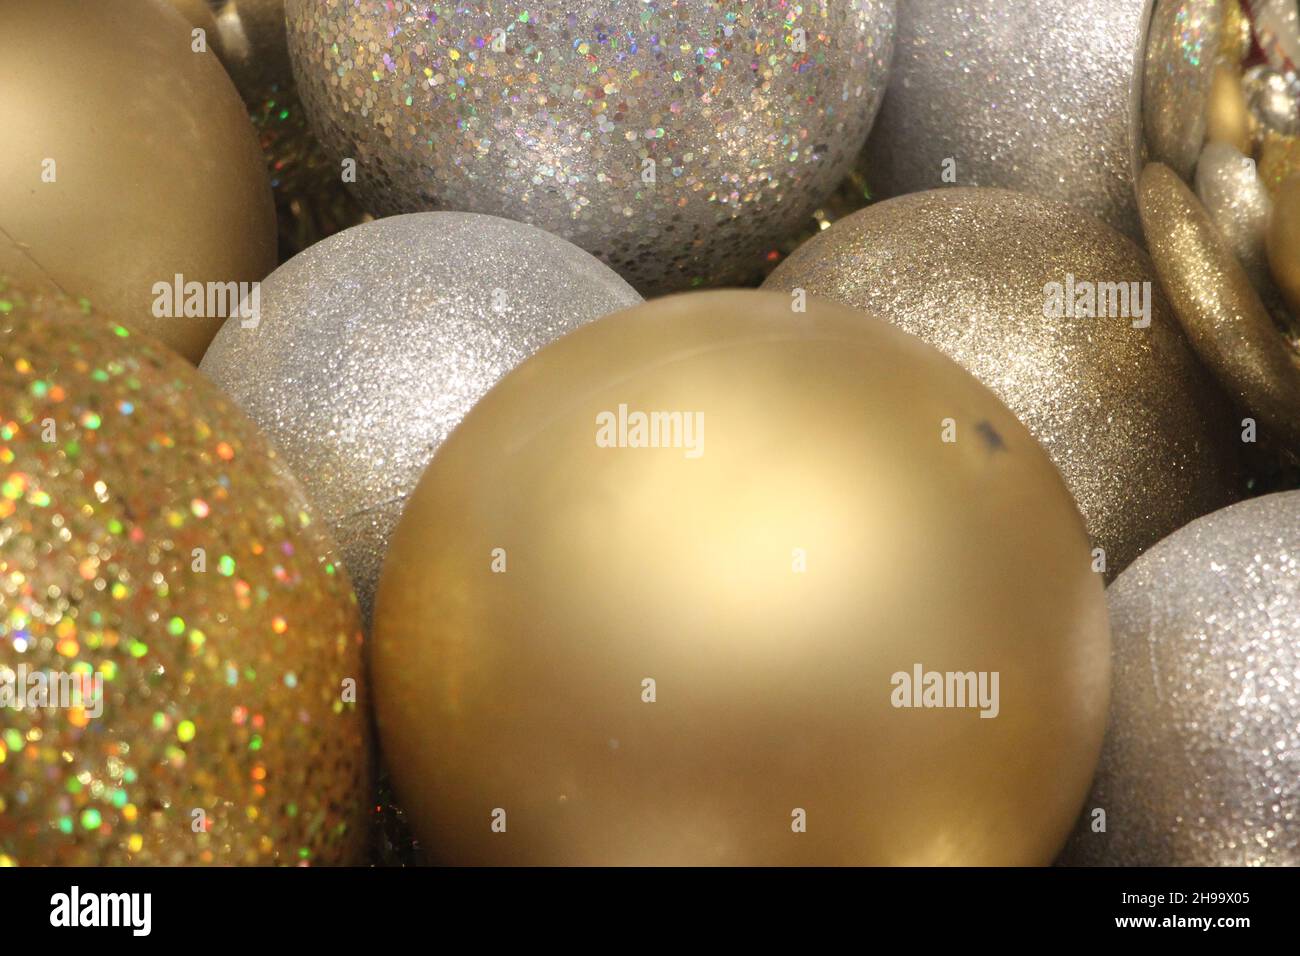 Weihnachtsdekoration. goldene glitzernde und silberne funkelnde Kugeln und Kugeln. Karte für das neue Jahr. Stockfoto